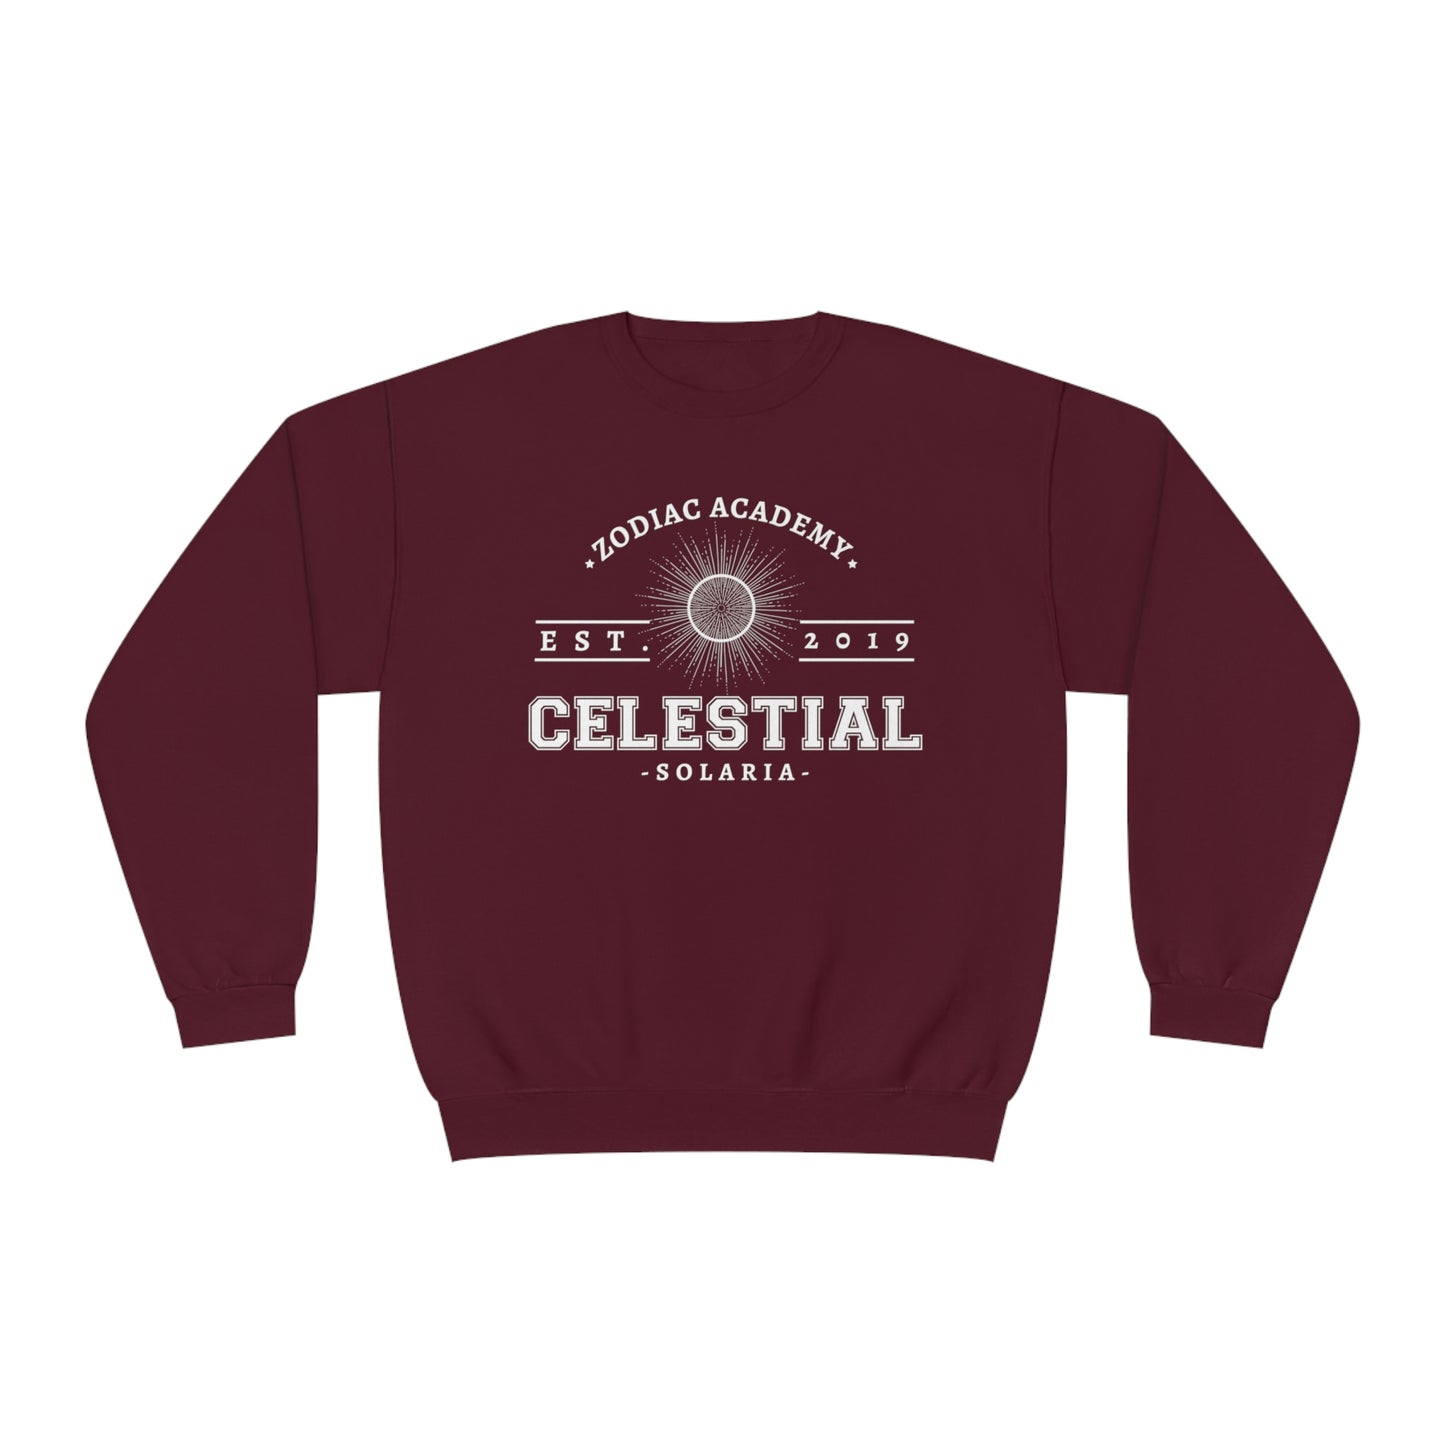 Celestial Zodiac Academy Crewneck Sweatshirt